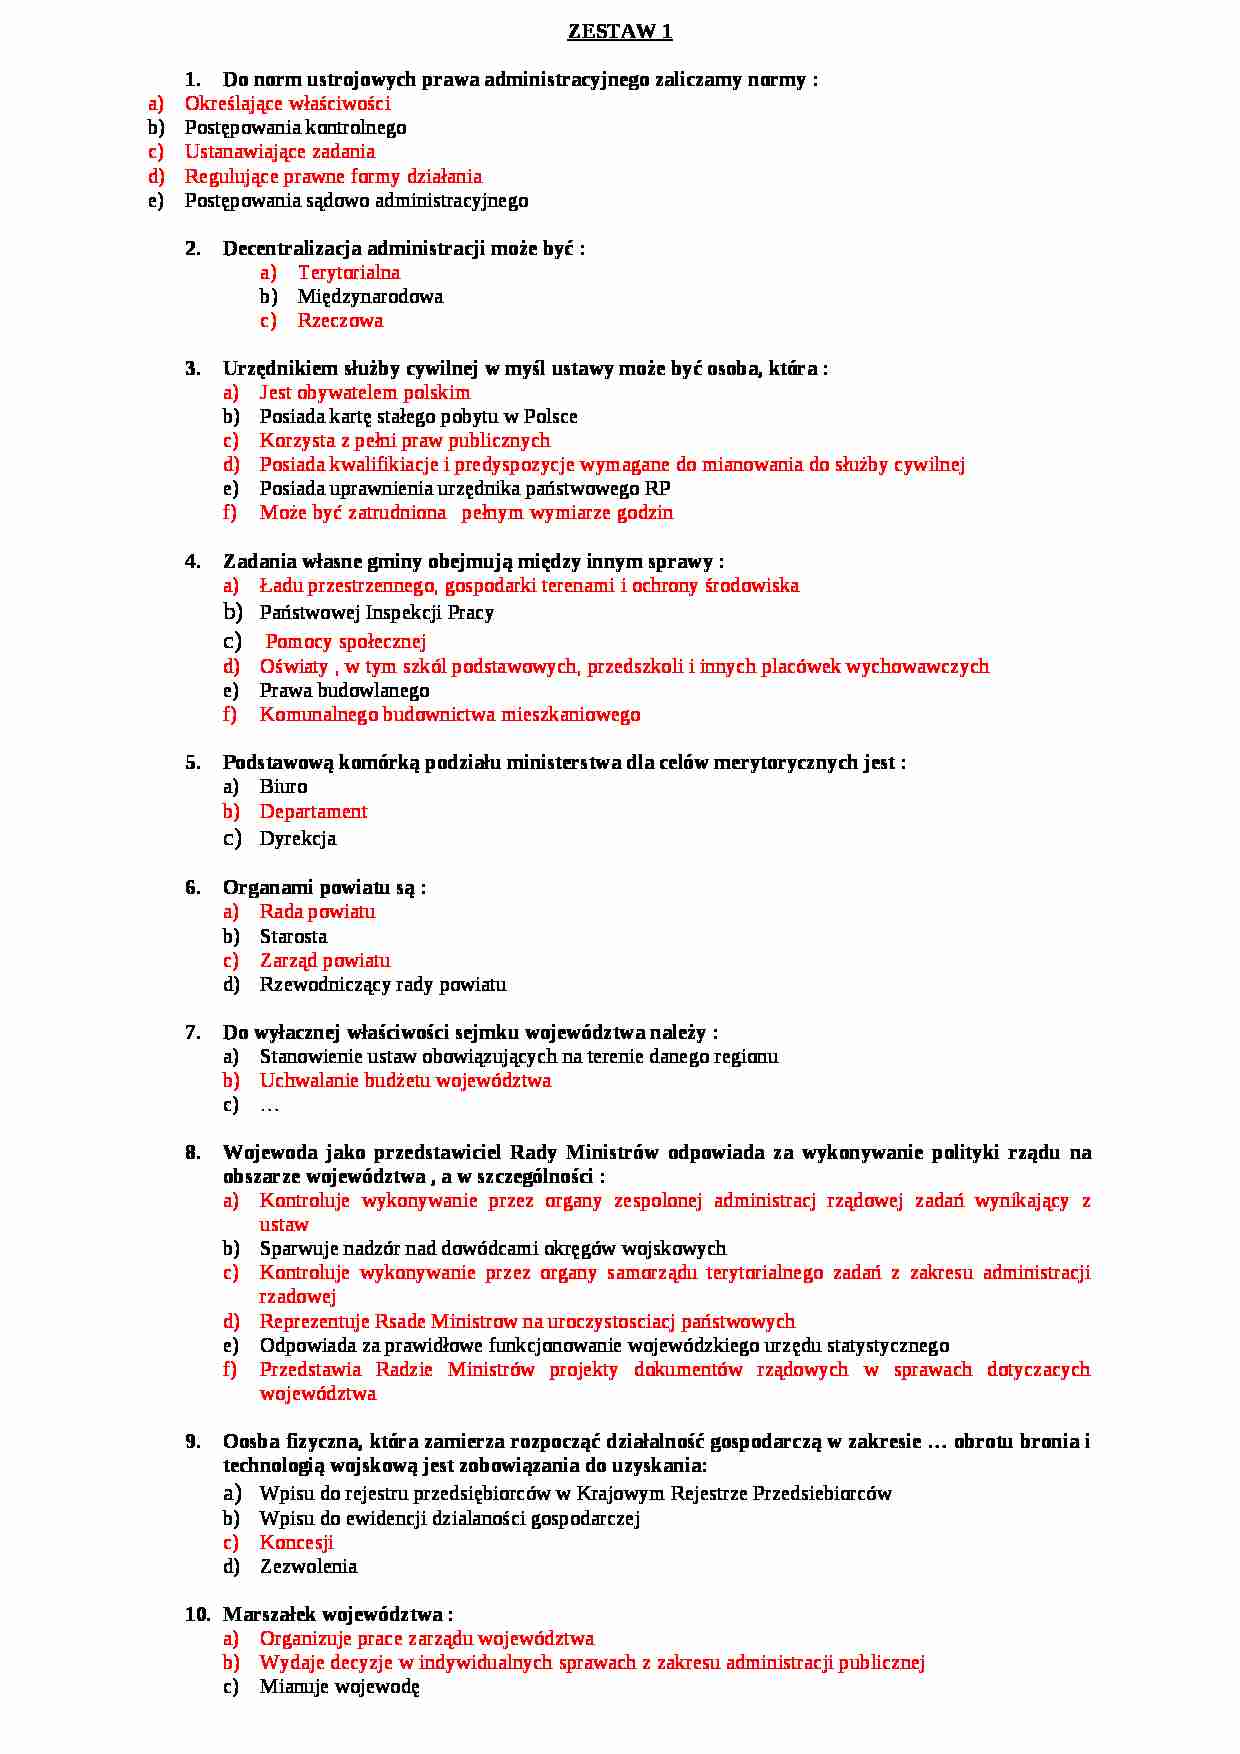  Prawo administracyjne -  Egzamin zestaw 1 - strona 1